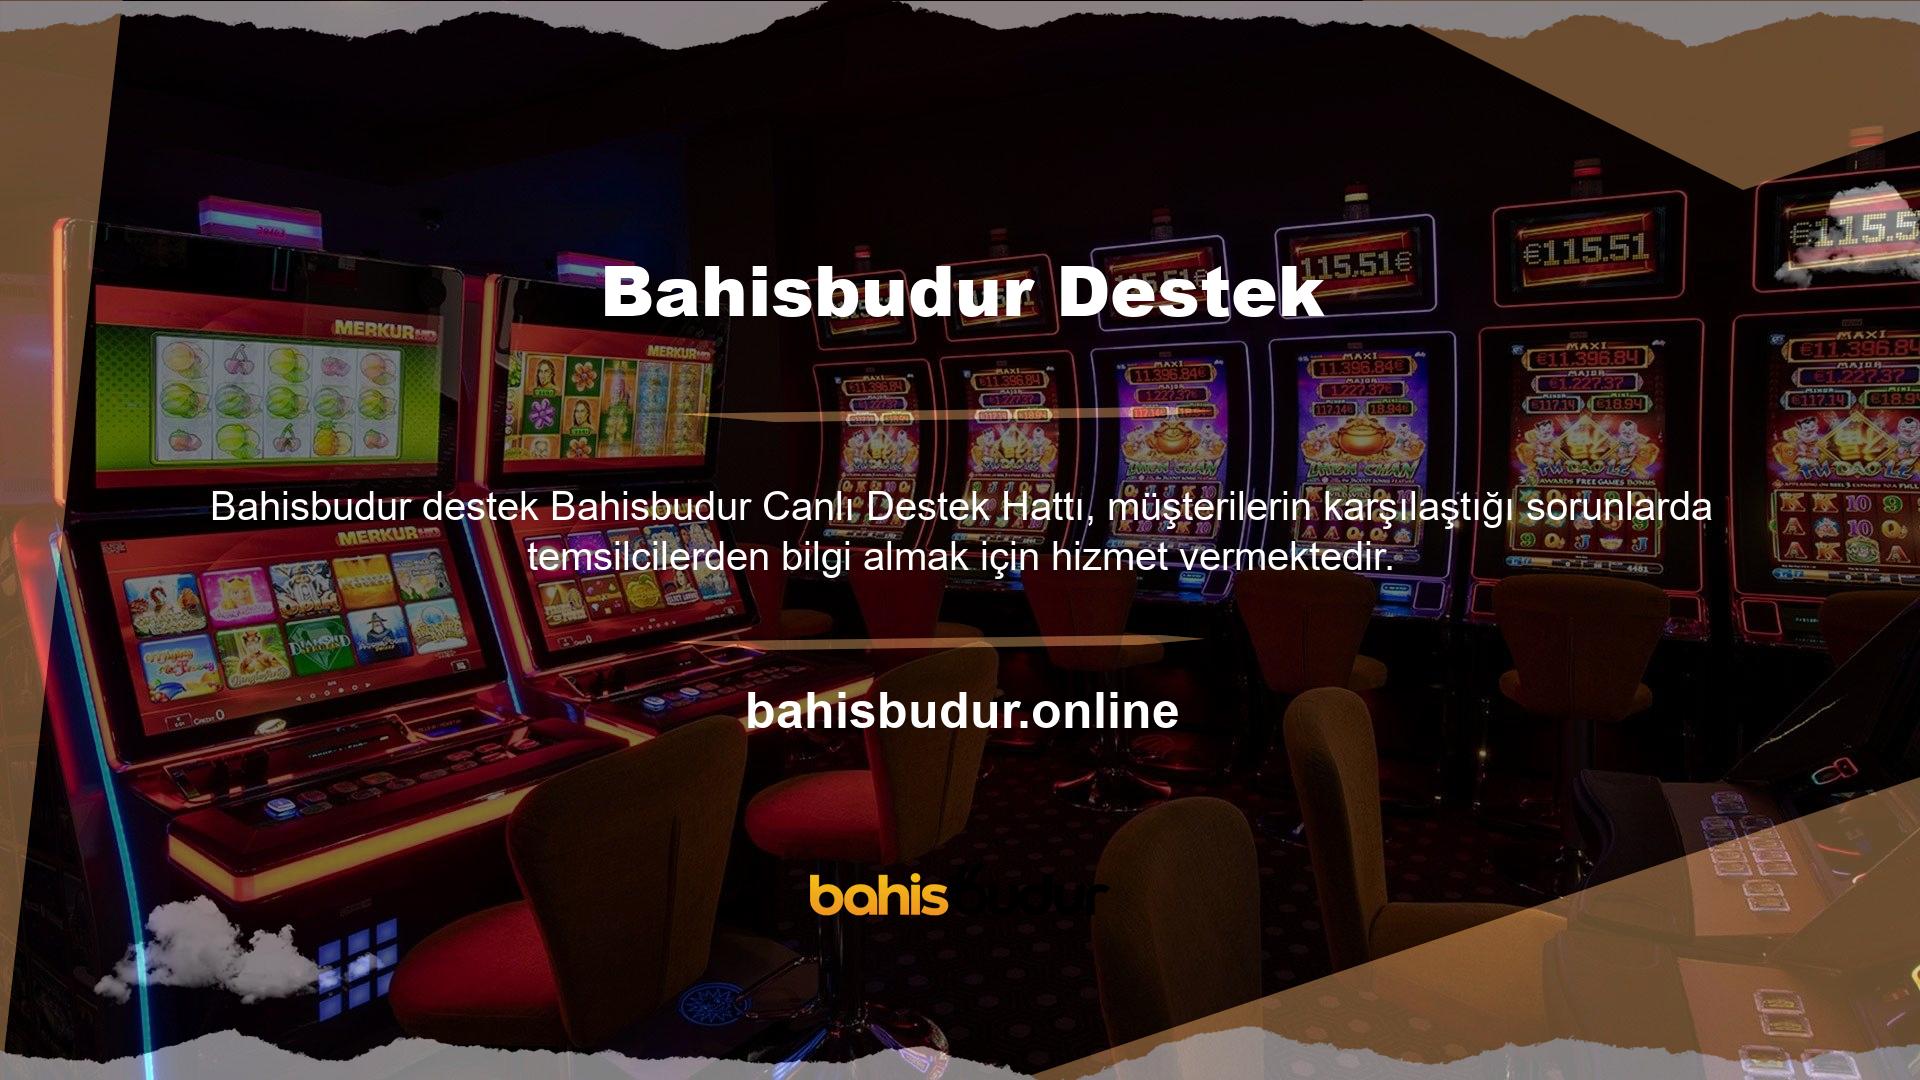 Bahisbudur bahis platformu üyeleri farklı oyun içerikleri ve farklı kampanyalar sunmaktadır